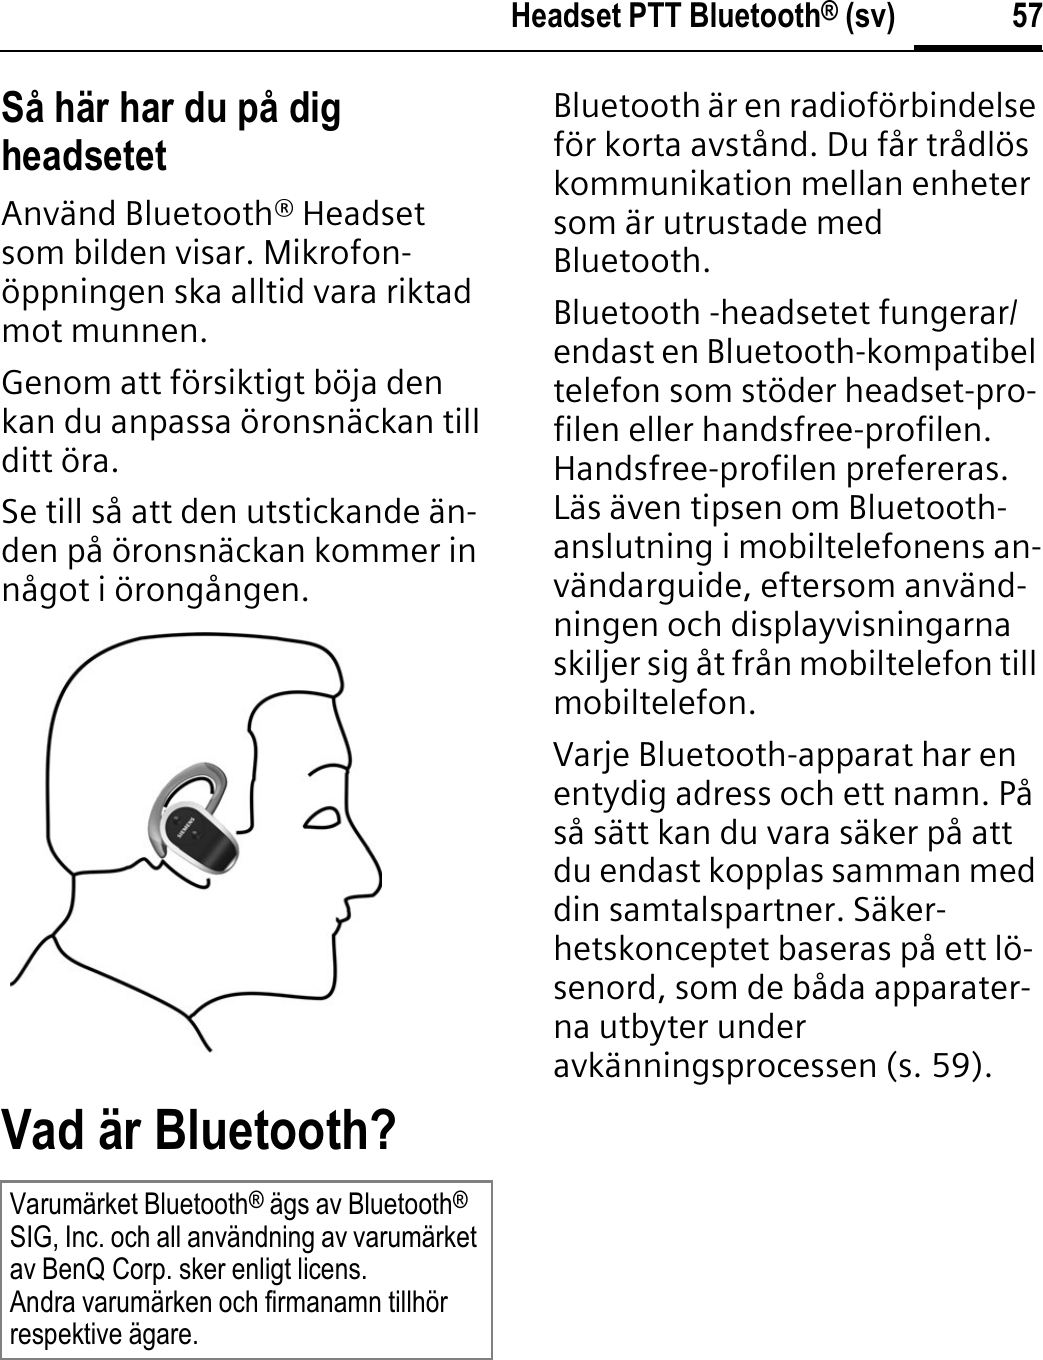 57Headset PTT Bluetooth® (sv)Så här har du på dig headsetetAnvänd Bluetooth® Headset som bilden visar. Mikrofon-öppningen ska alltid vara riktad mot munnen.Genom att försiktigt böja den kan du anpassa öronsnäckan till ditt öra.Se till så att den utstickande än-den på öronsnäckan kommer in något i örongången.Vad är Bluetooth?Bluetooth är en radioförbindelse för korta avstånd. Du får trådlös kommunikation mellan enheter som är utrustade med Bluetooth.Bluetooth -headsetet fungerar/endast en Bluetooth-kompatibel telefon som stöder headset-pro-filen eller handsfree-profilen. Handsfree-profilen prefereras. Läs även tipsen om Bluetooth-anslutning i mobiltelefonens an-vändarguide, eftersom använd-ningen och displayvisningarna skiljer sig åt från mobiltelefon till mobiltelefon.Varje Bluetooth-apparat har en entydig adress och ett namn. På så sätt kan du vara säker på att du endast kopplas samman med din samtalspartner. Säker-hetskonceptet baseras på ett lö-senord, som de båda apparater-na utbyter under avkänningsprocessen (s. 59).Varumärket Bluetooth® ägs av Bluetooth®SIG, Inc. och all användning av varumärket av BenQ Corp. sker enligt licens.Andra varumärken och firmanamn tillhör respektive ägare.